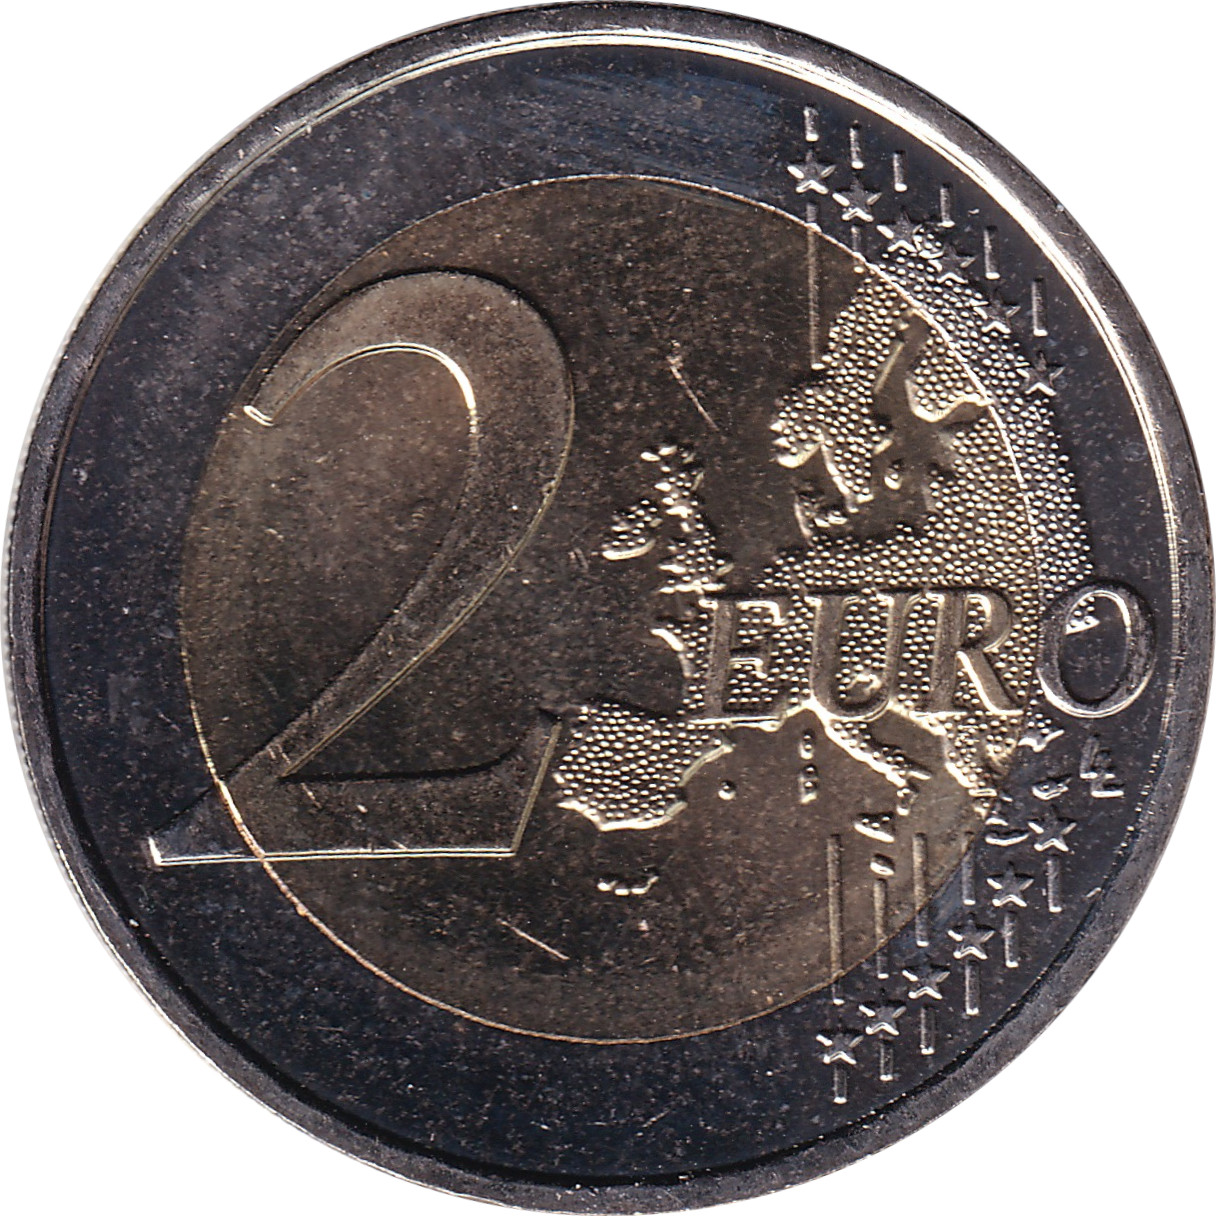 2 euro - Drapeau européen - France